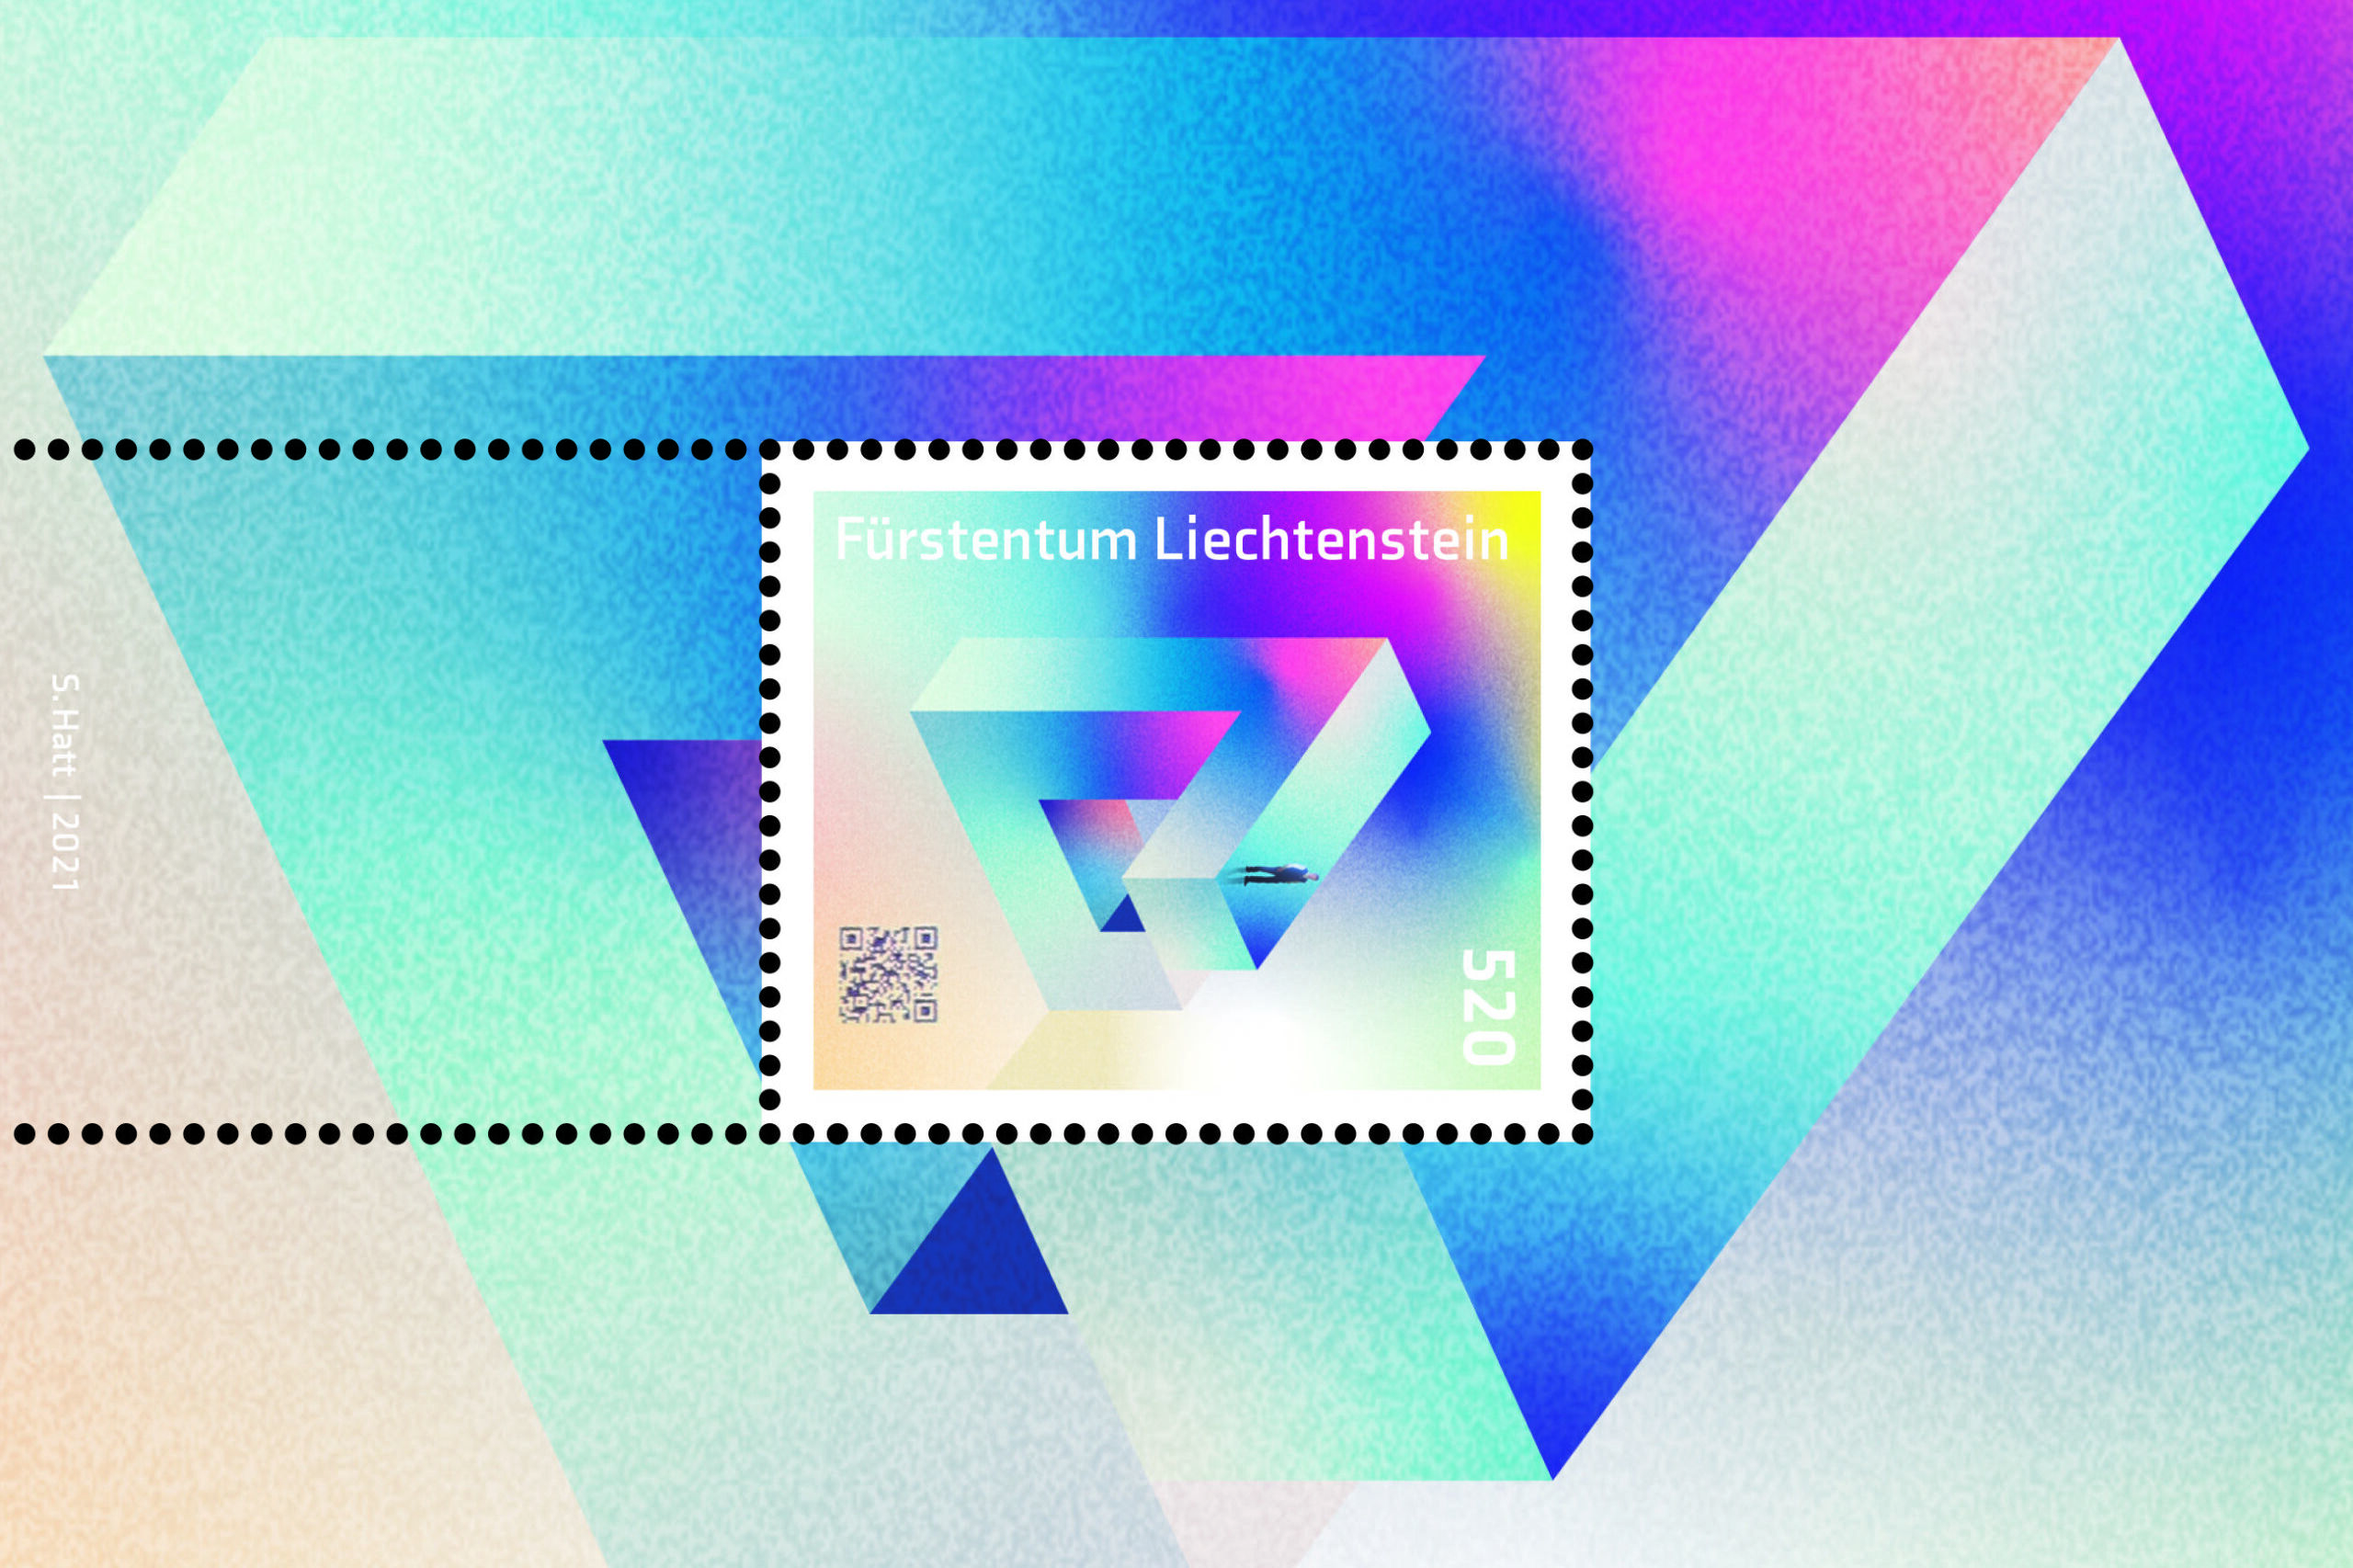 Ang 4.0 stamp ng Principality of Liechtenstein na nilagyan ng Blockchain technology